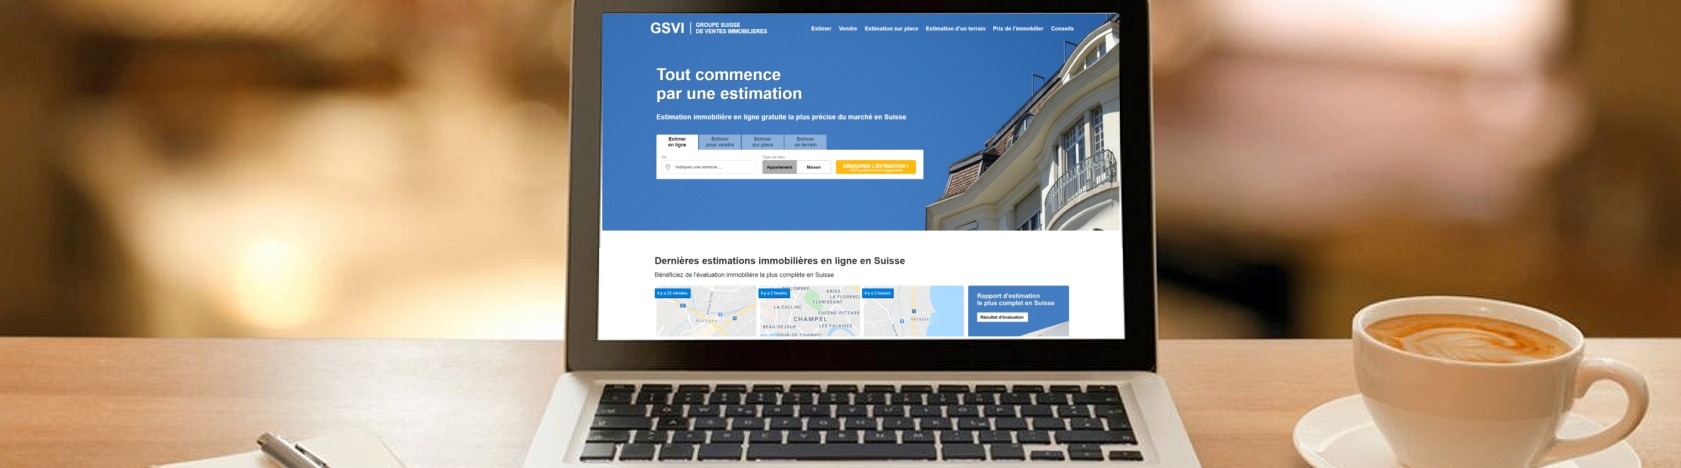 logiciel simulateur estimation bien immobilier suisse